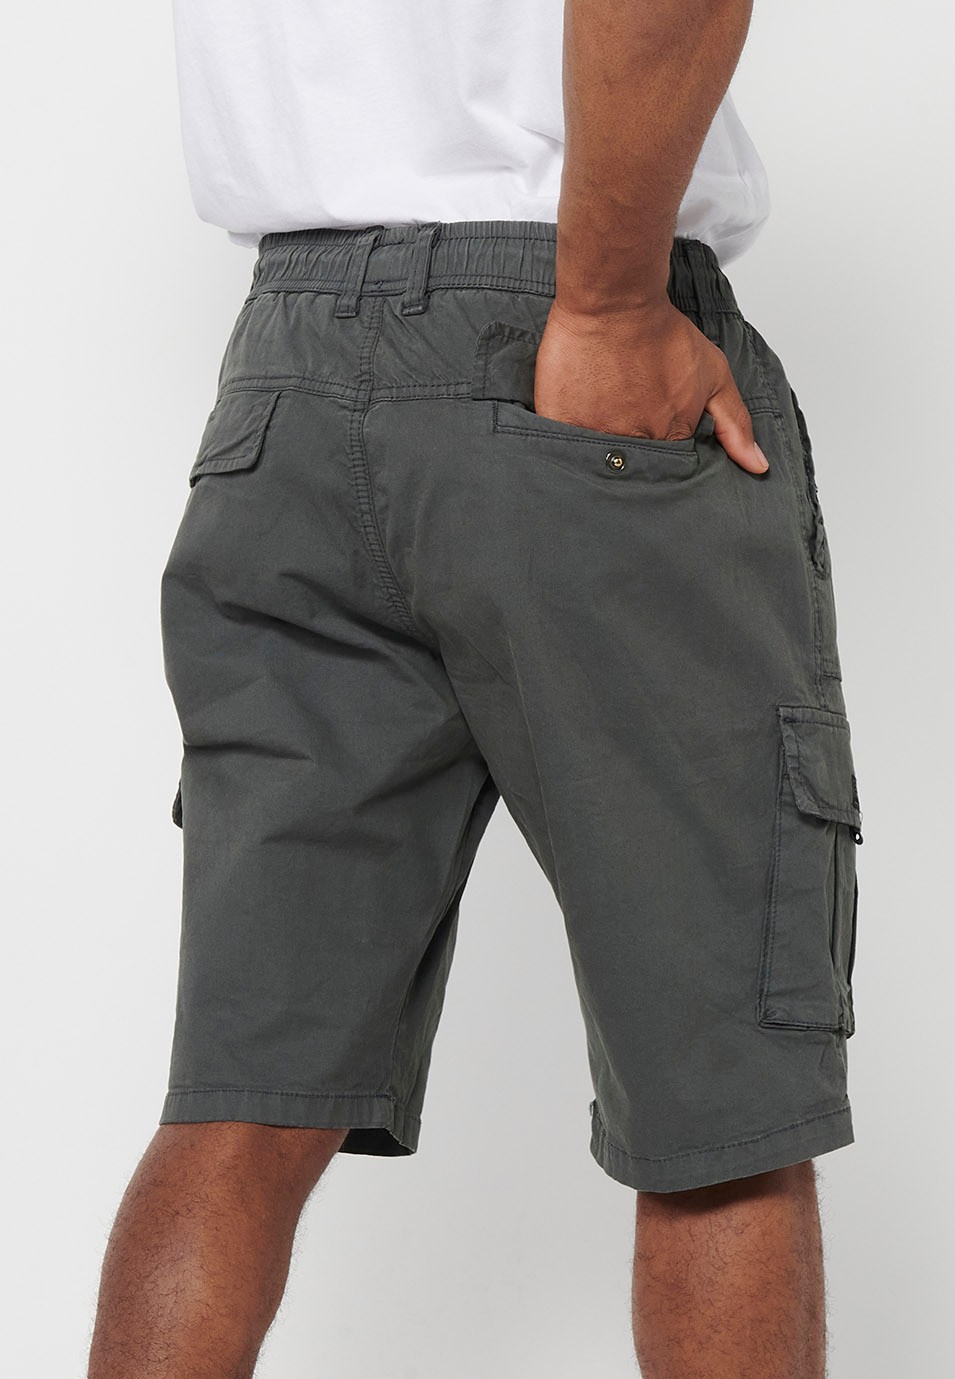 Pantalons curts càrrec amb Butxaques laterals amb solapa i Tancament davanter amb cremallera i botó Color Gris per a Home 9